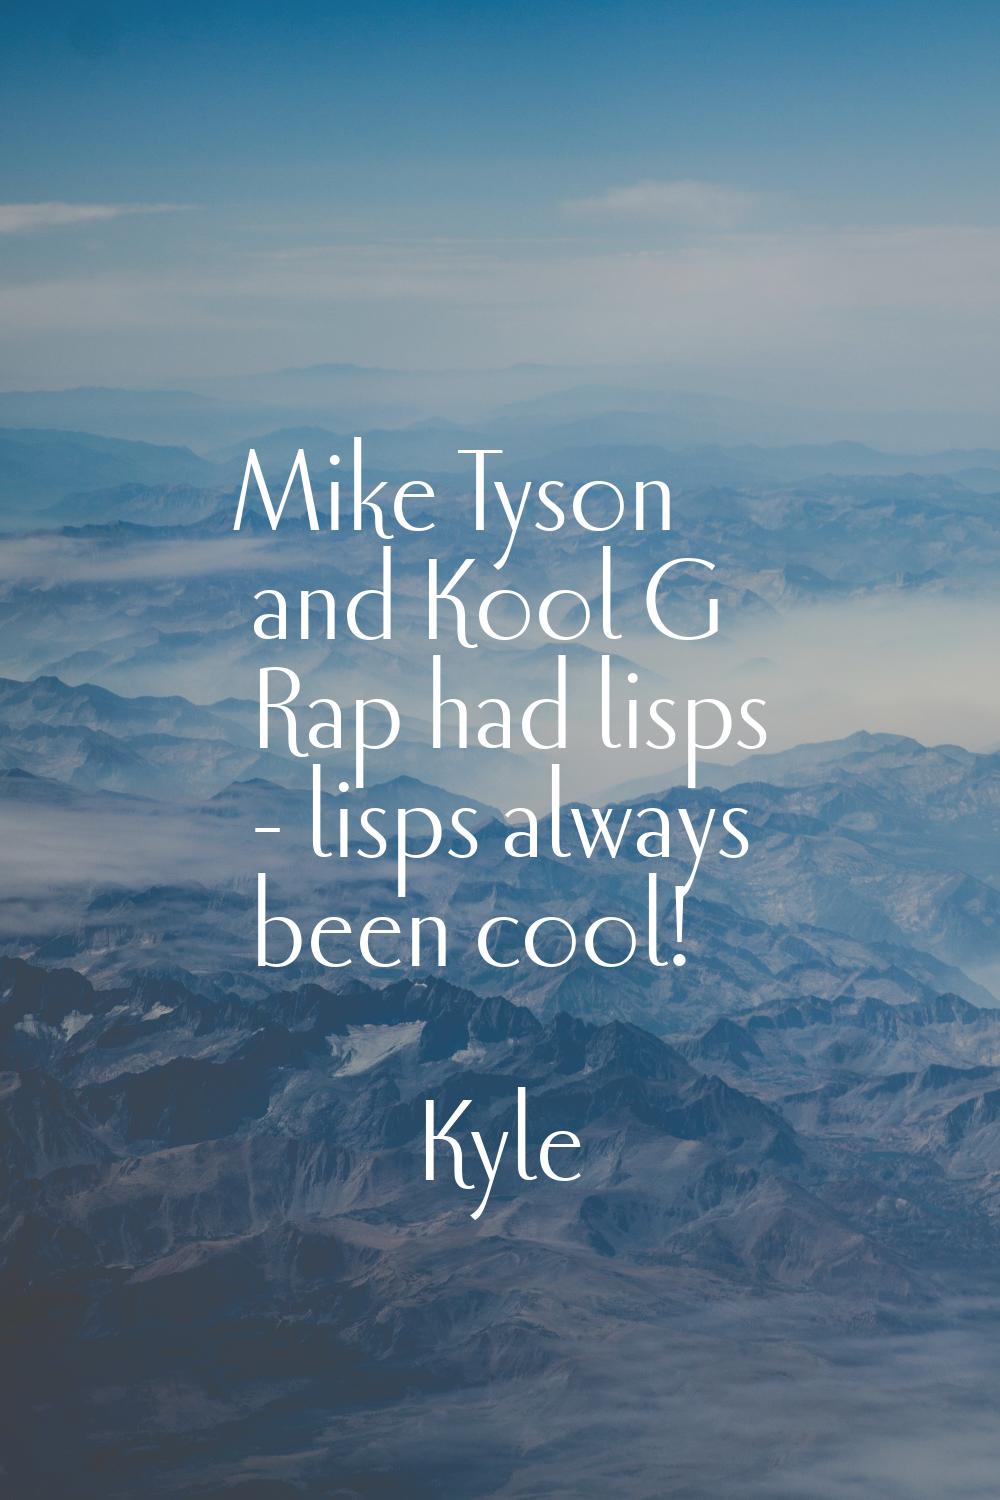 Mike Tyson and Kool G Rap had lisps - lisps always been cool!